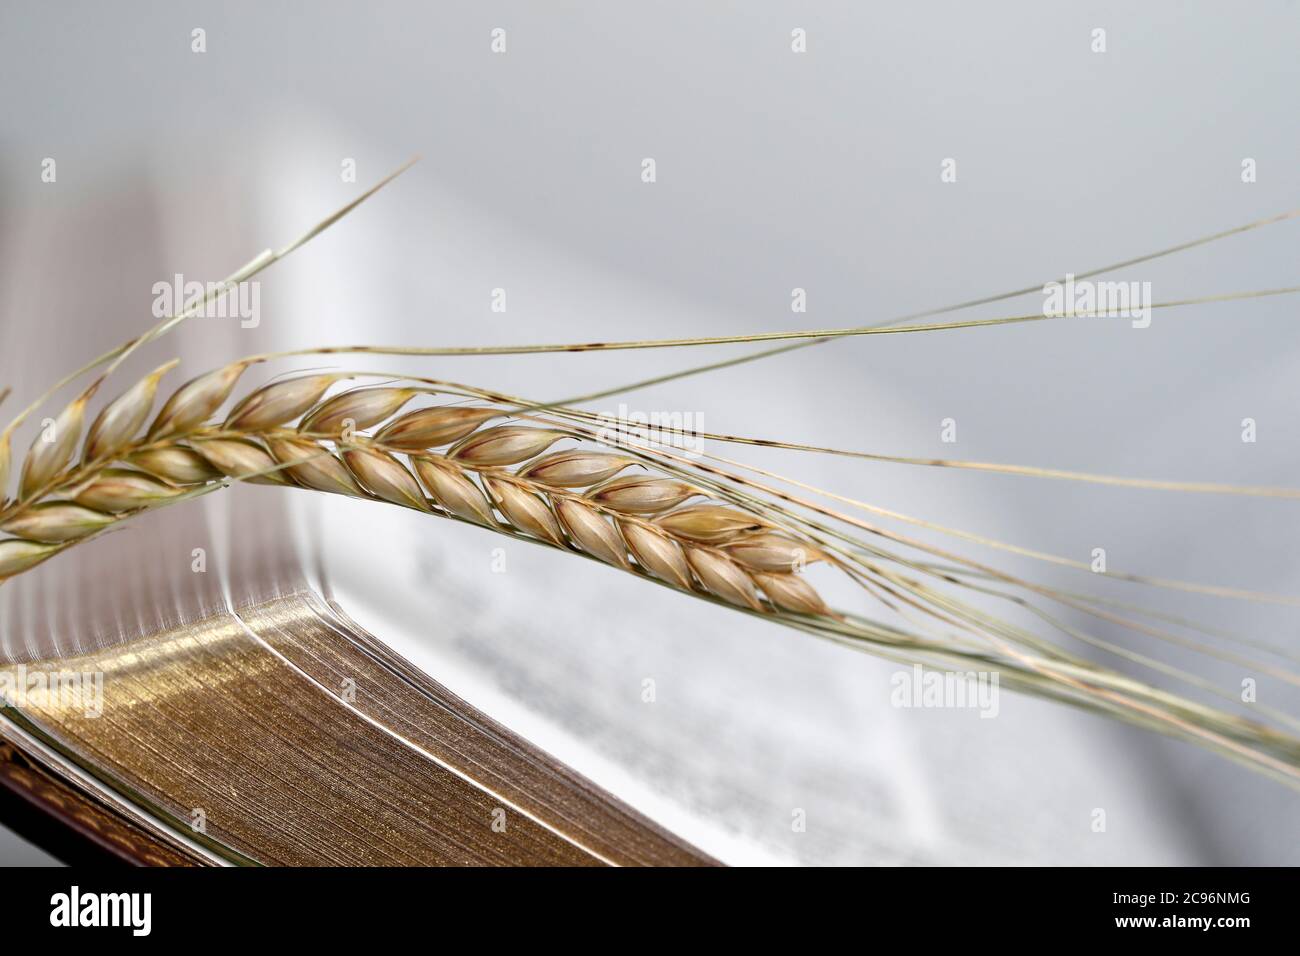 Le livre sacré de la Bible et les oreilles de blé comme symbole de la nourriture spirituelle et physique. France. Banque D'Images